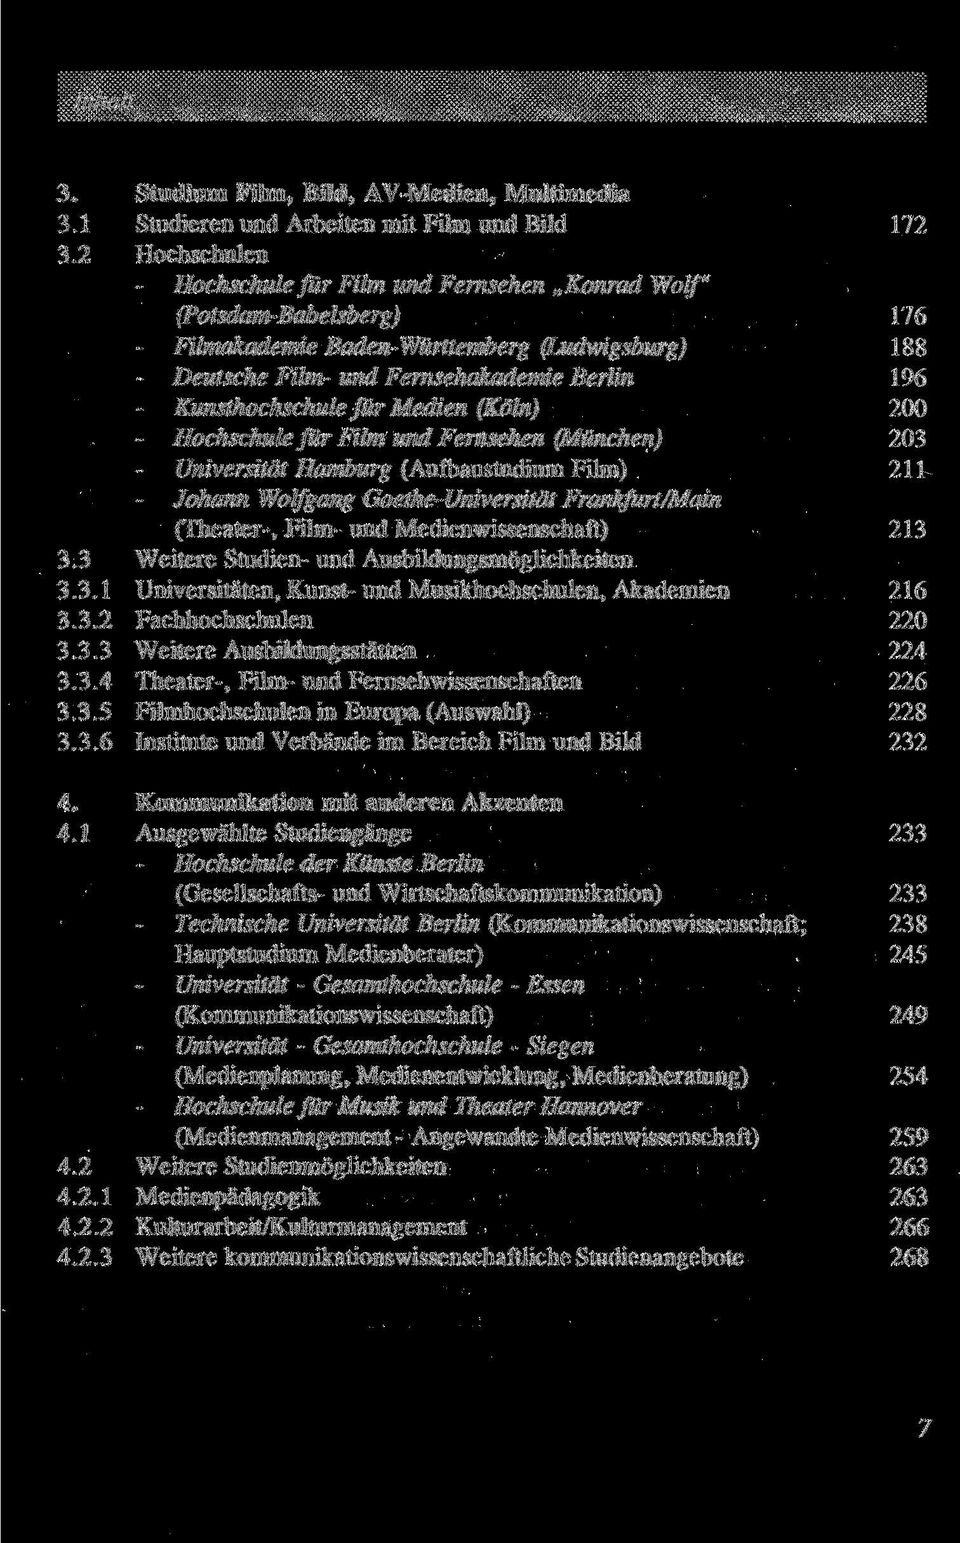 (Aufbaustudium Film) 211 - Johann Wolf gang Goethe-Universität Frankfurt/Main (Theater-, Film- und Medienwissenschaft) 213 3 Weitere Studien- und Ausbildungsmöglichkeiten 3.